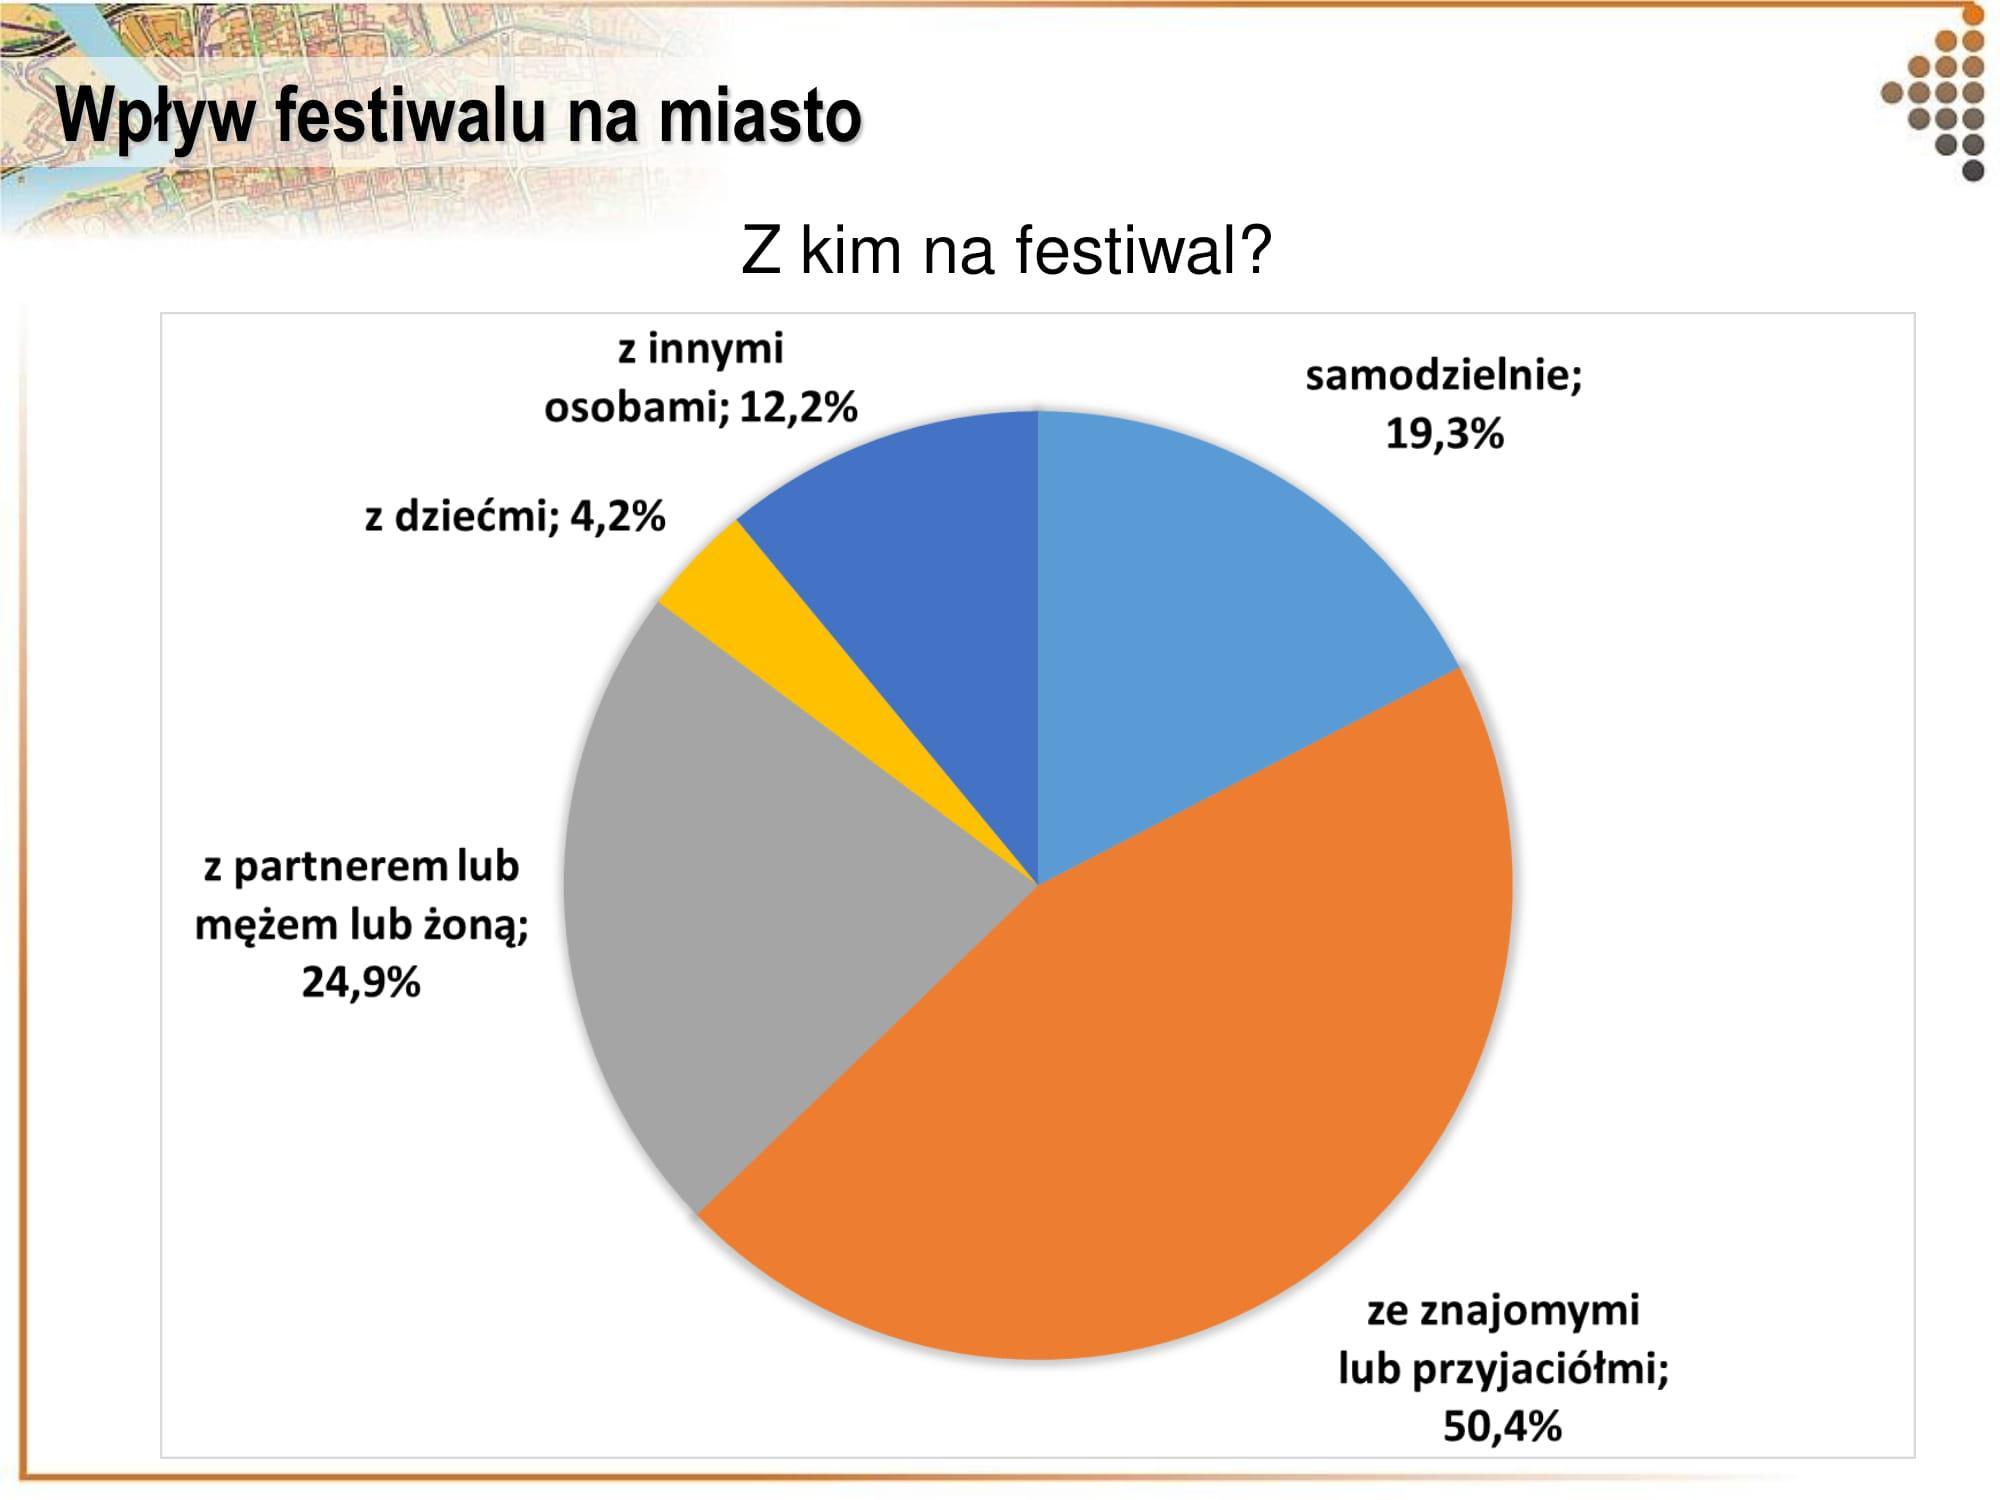 Ponad połowa uczestników przybywa na festiwal ze znajomymi i przyjaciółmi, fot. materiały prasowe